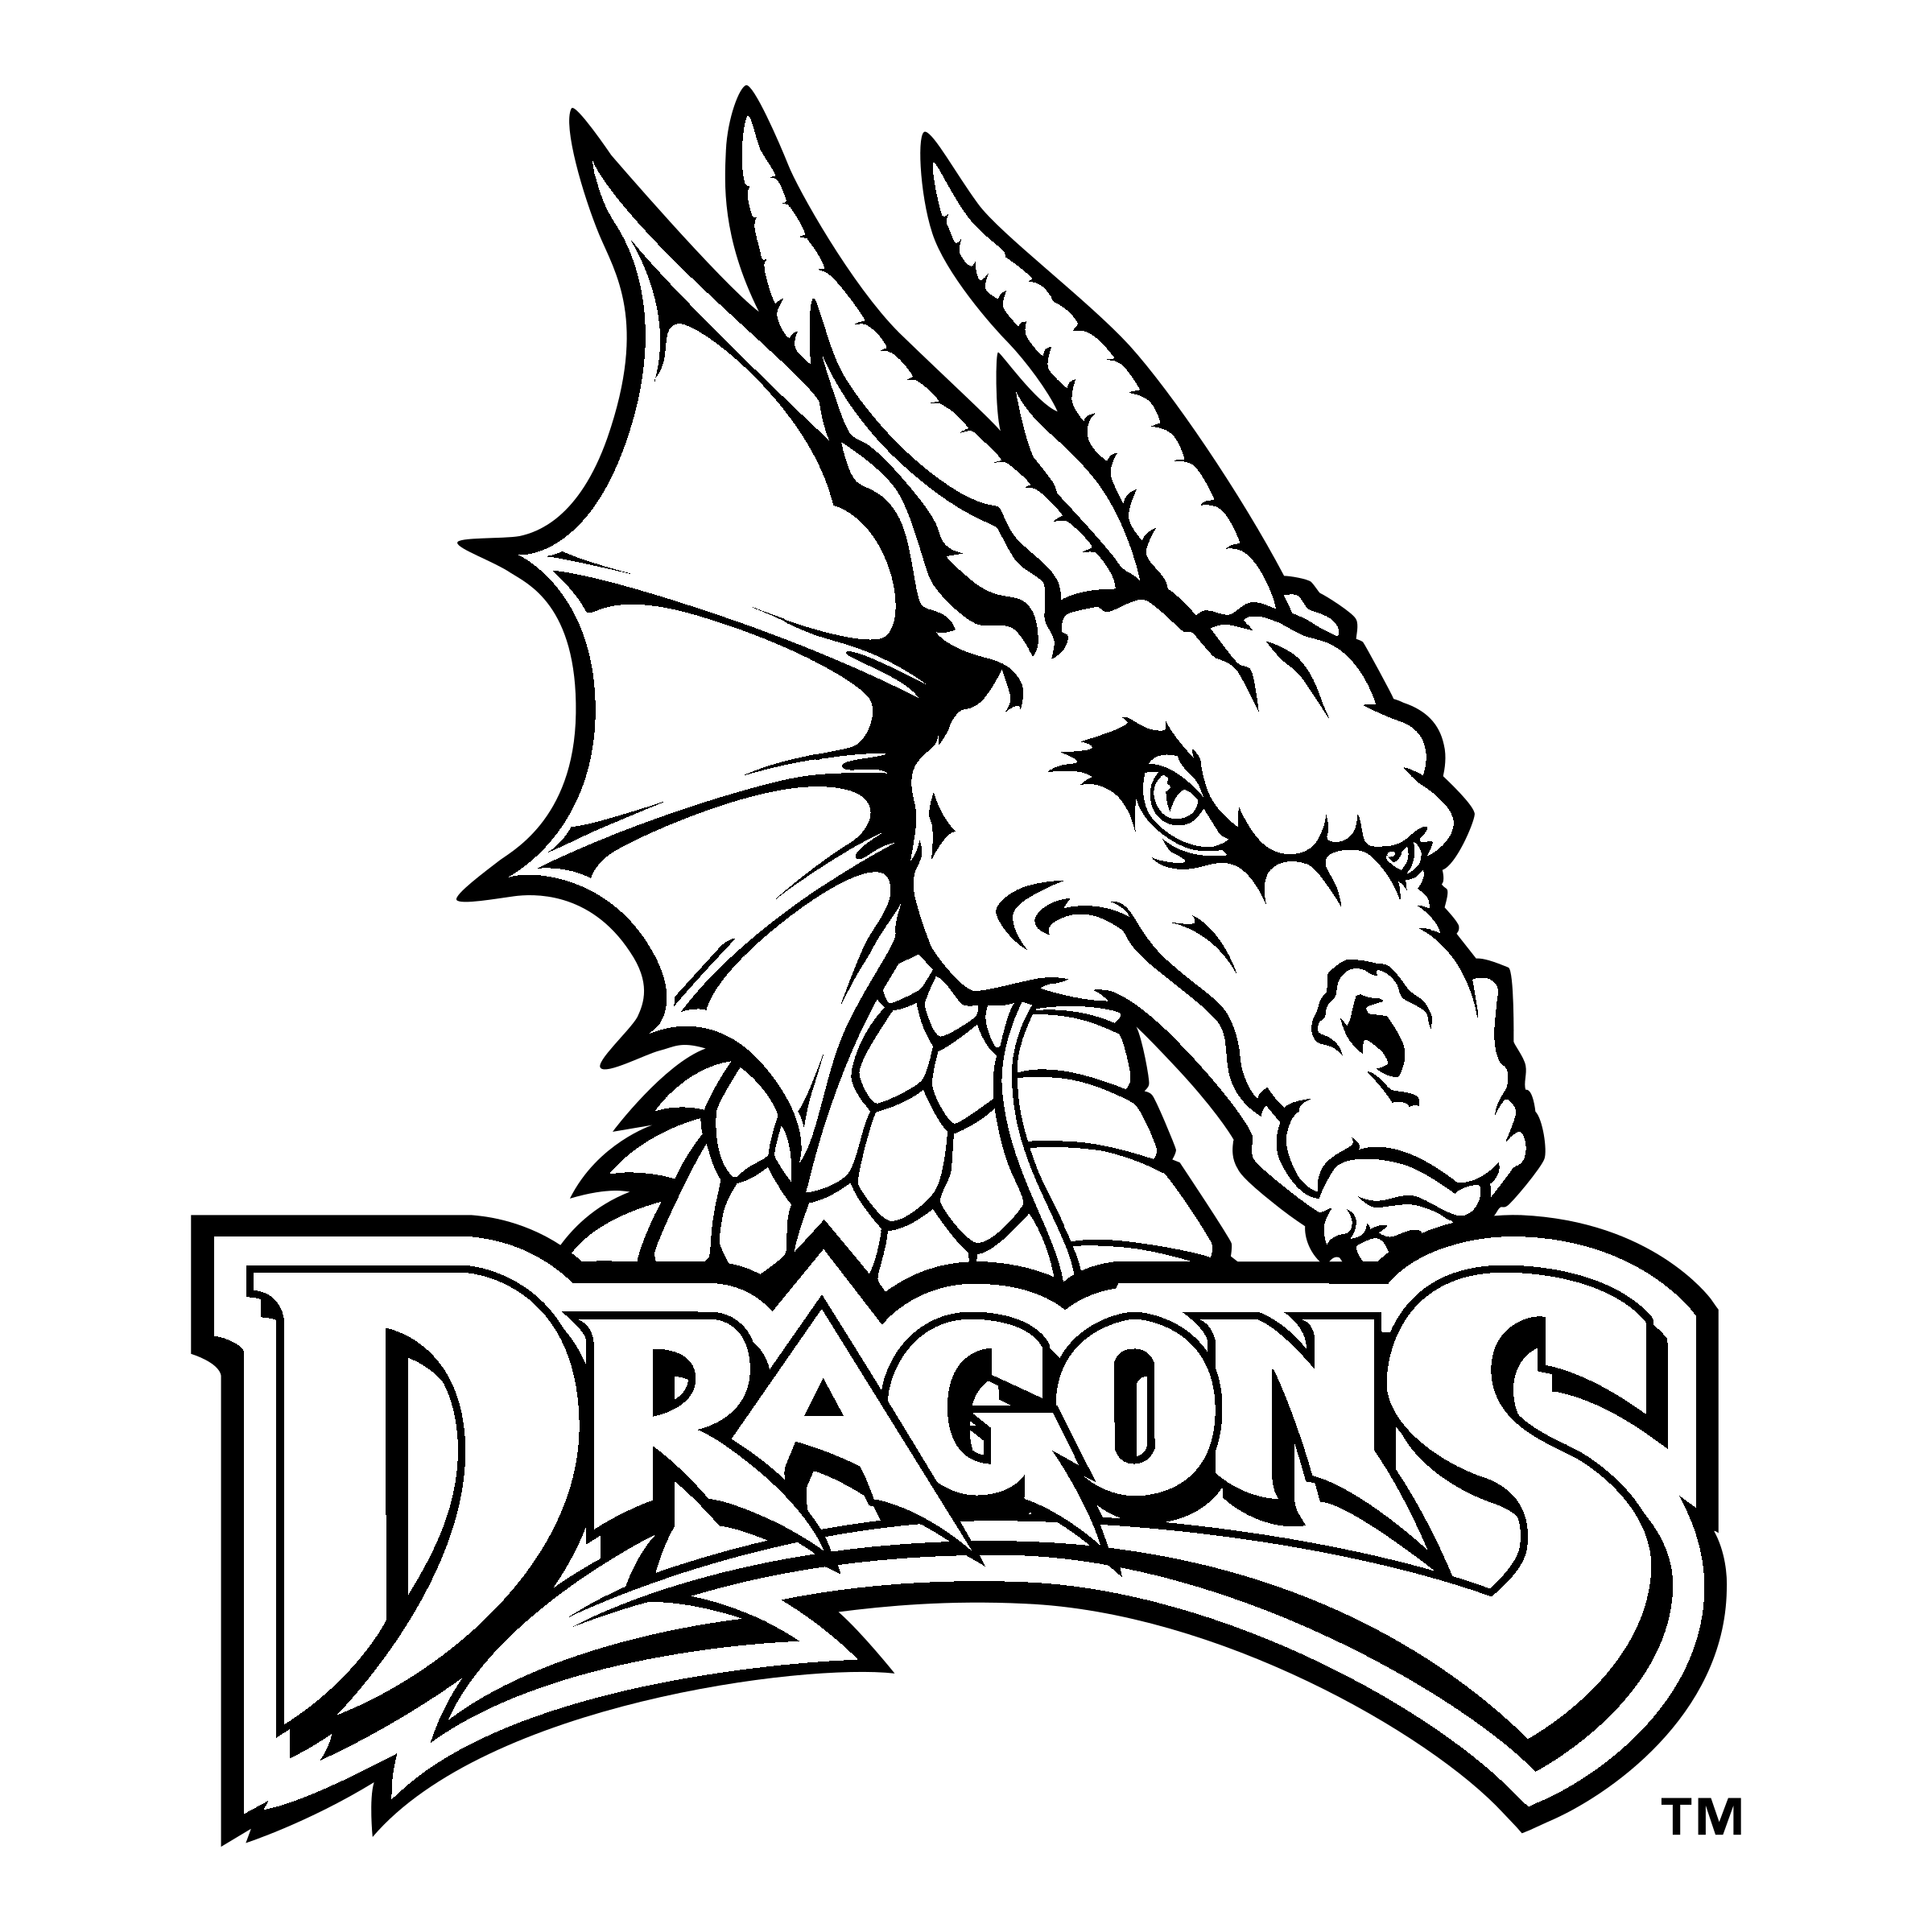 Dayton Dragons Logo - Dayton Dragons Logo PNG Transparent & SVG Vector - Freebie Supply